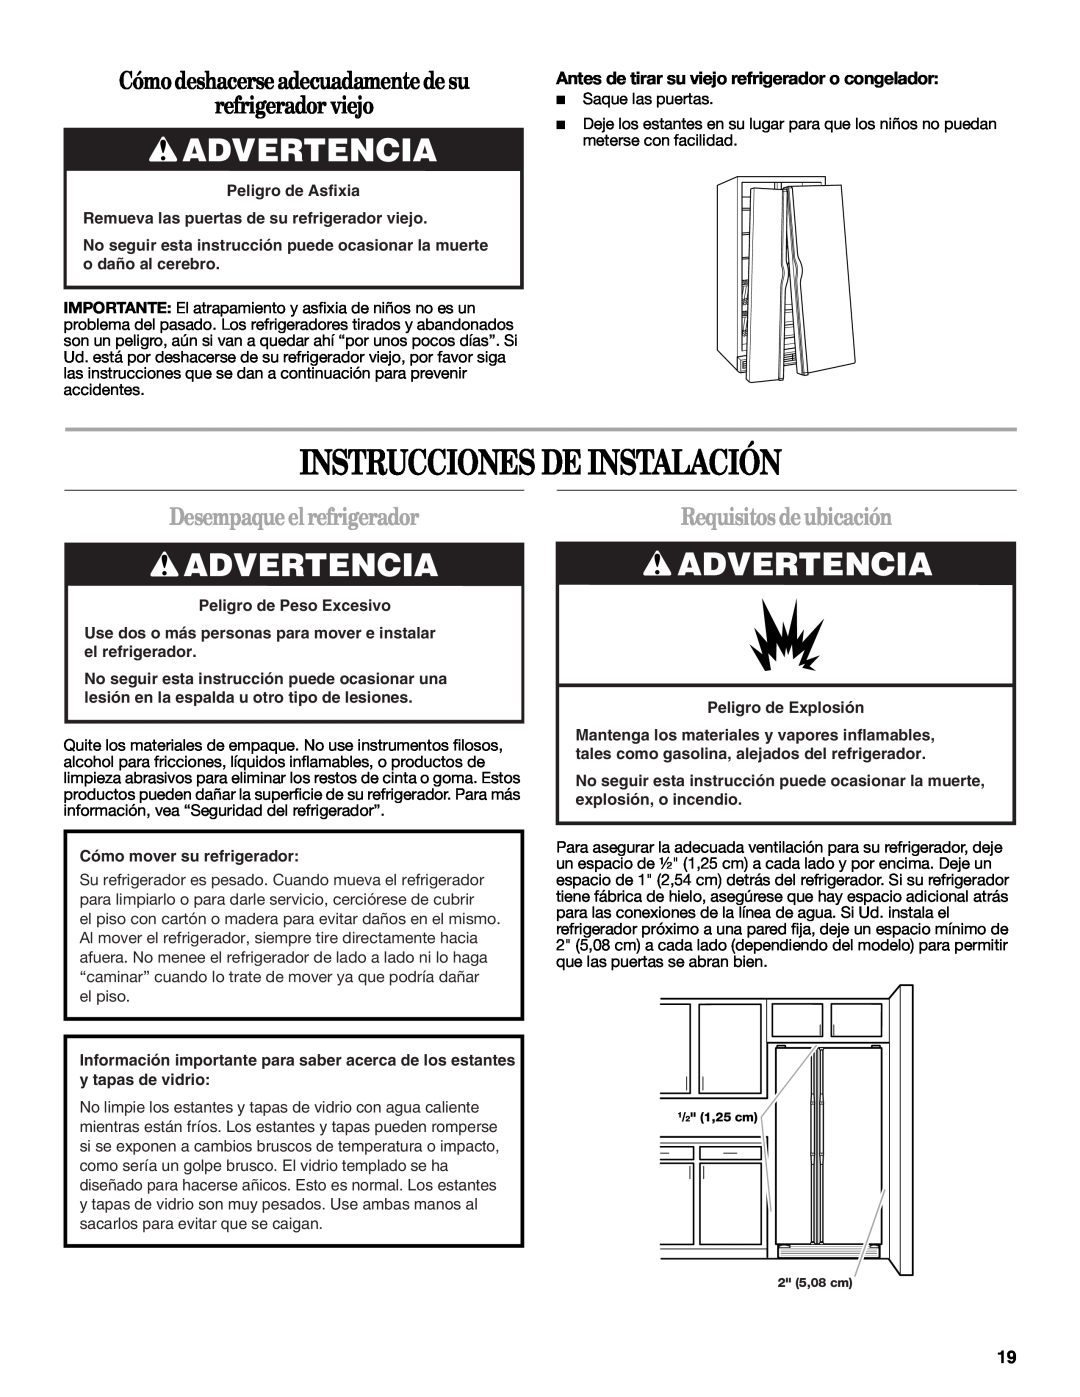 Amana W10321485A Instrucciones De Instalación, Advertencia, Cómo deshacerse adecuadamente de su refrigerador viejo 